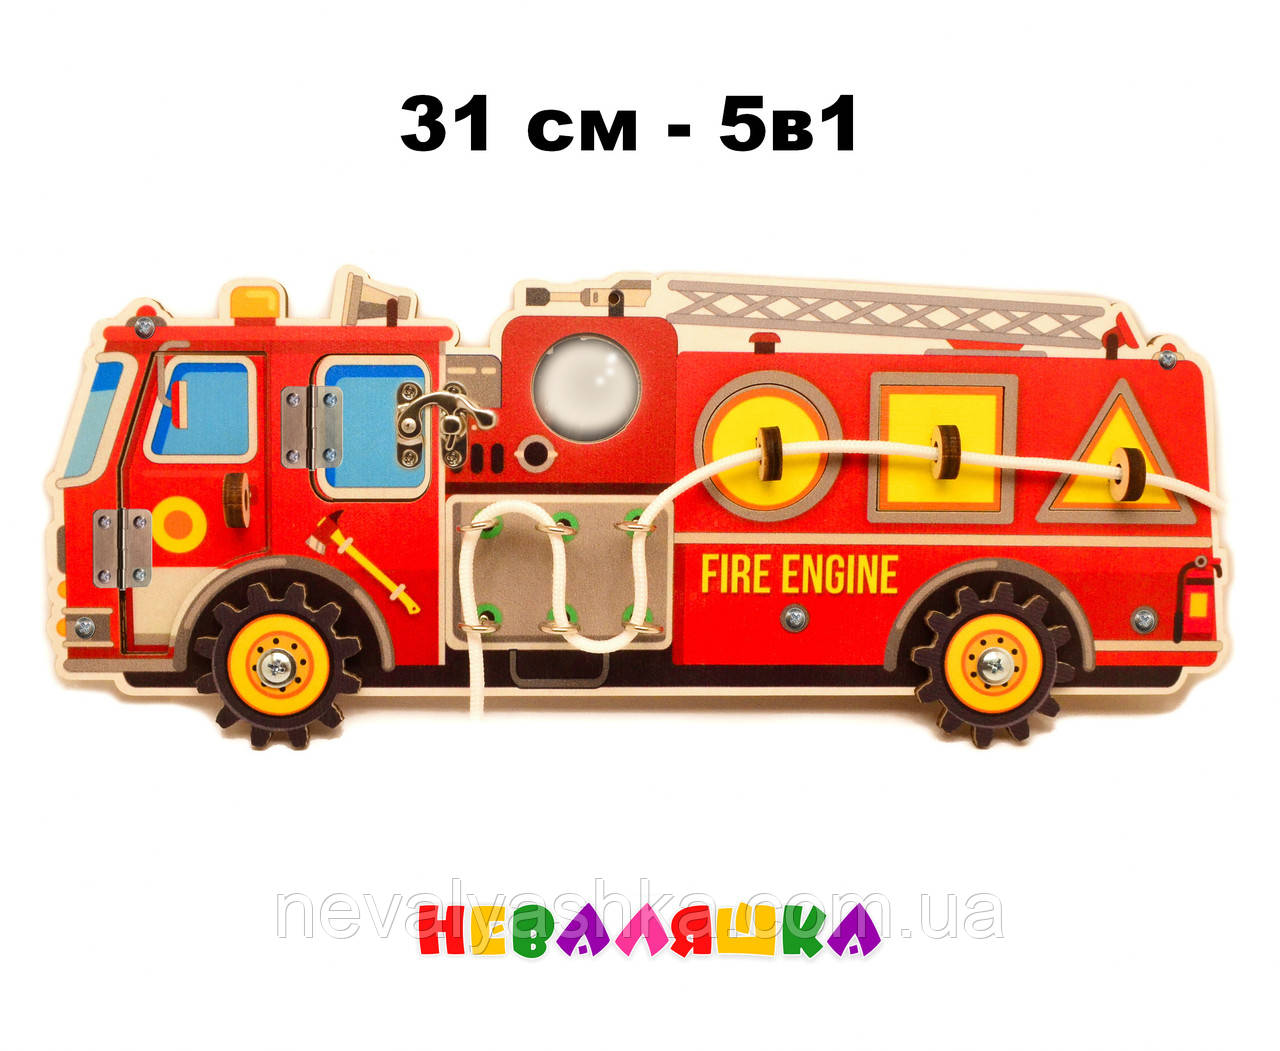 

Цветная Заготовка для Бизиборда Пожарная Машина 31 см Развитие 5в1: Дверки Шнуровка Зеркало Геометрика Колеса, Красный